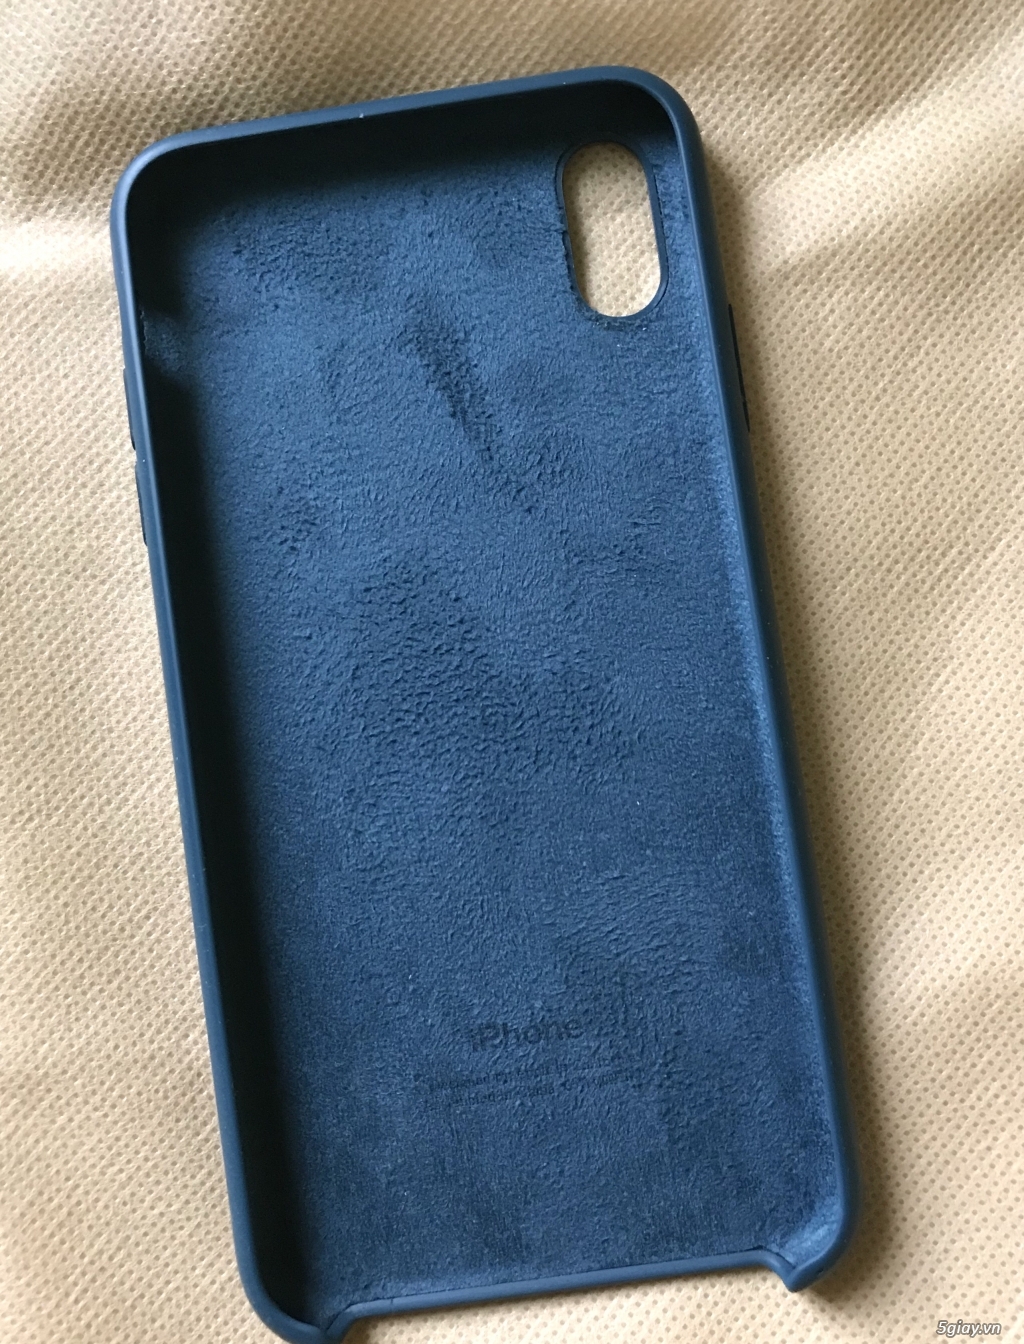 Ốp lưng iphone xsmax màu xanh dương - 4